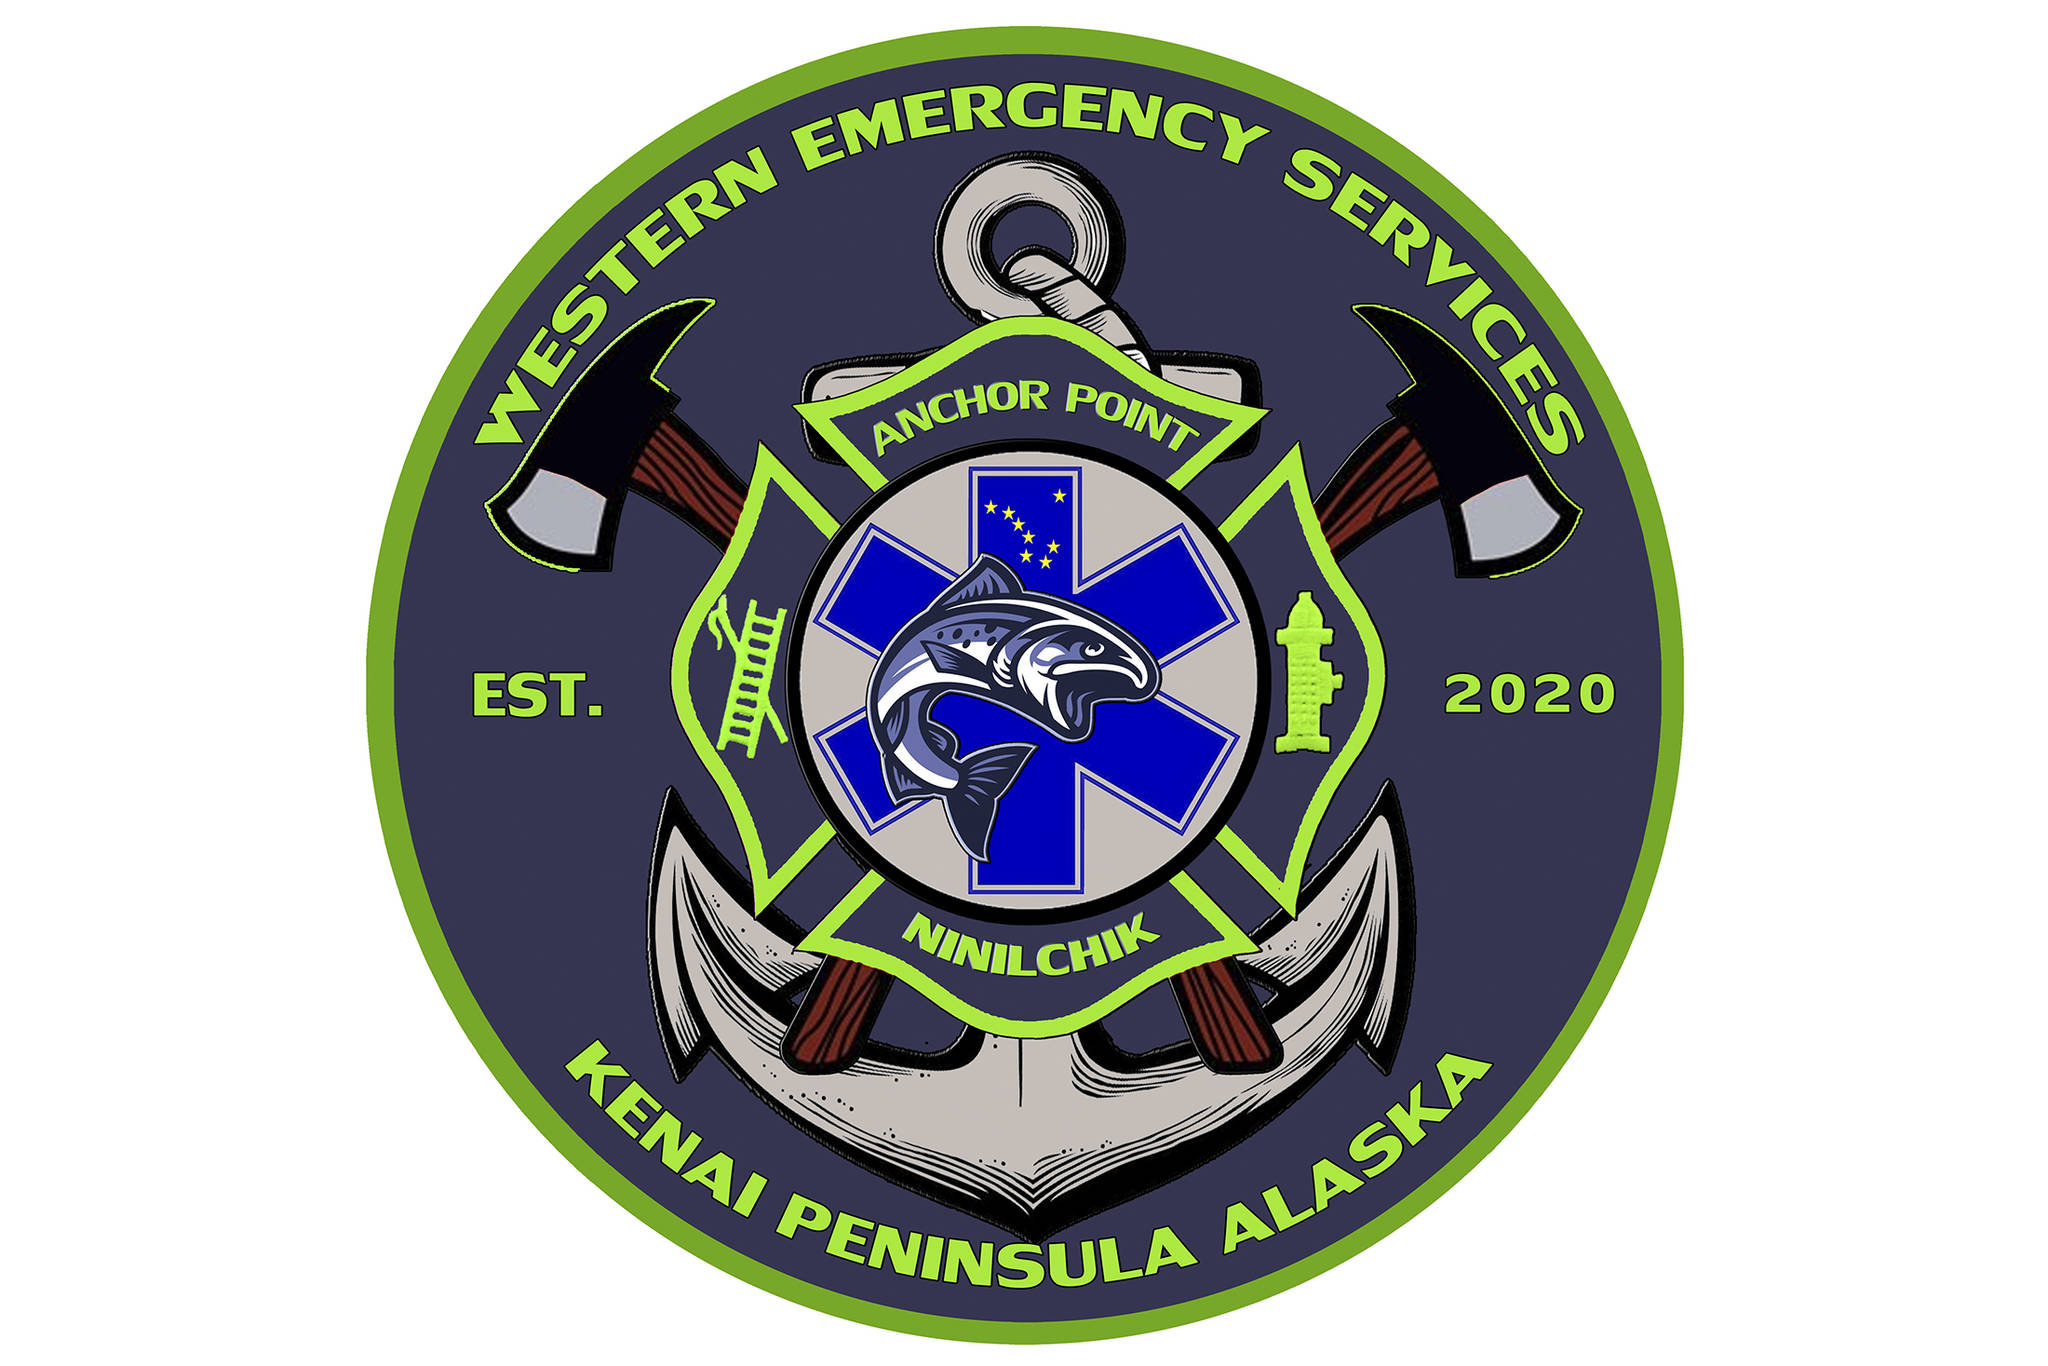 Western Emergency Services logo. (Courtesy image)